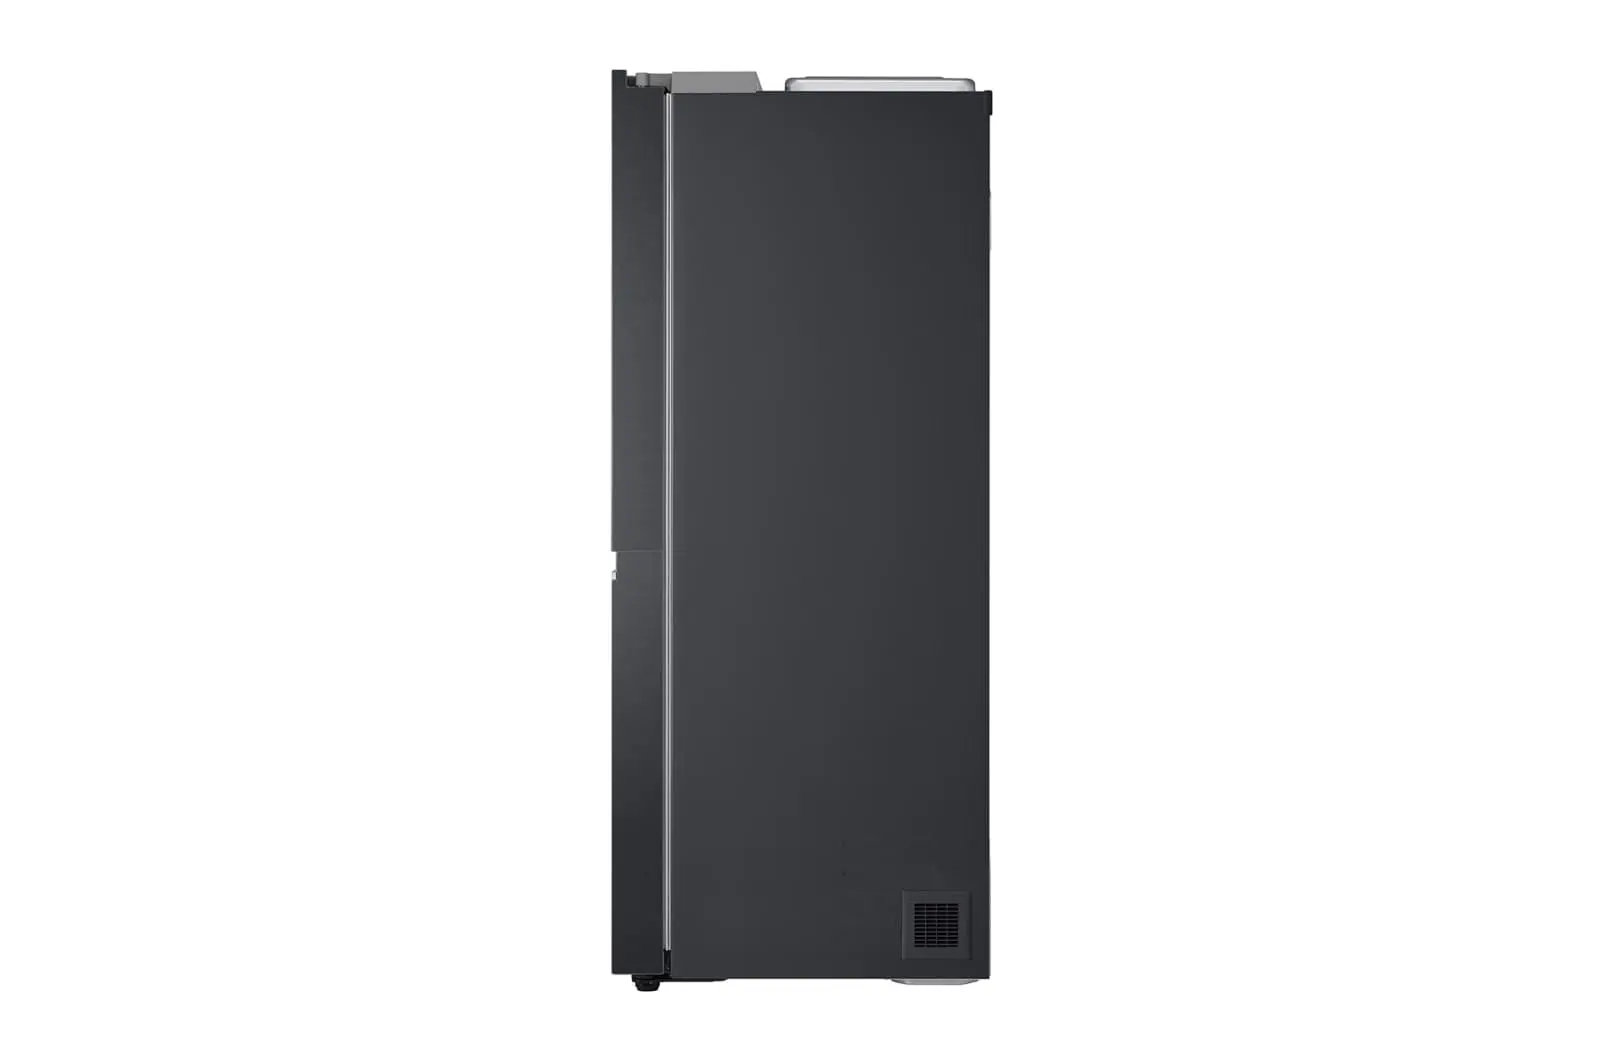 LG-694L-Side-by-side-fridge-11.jpg